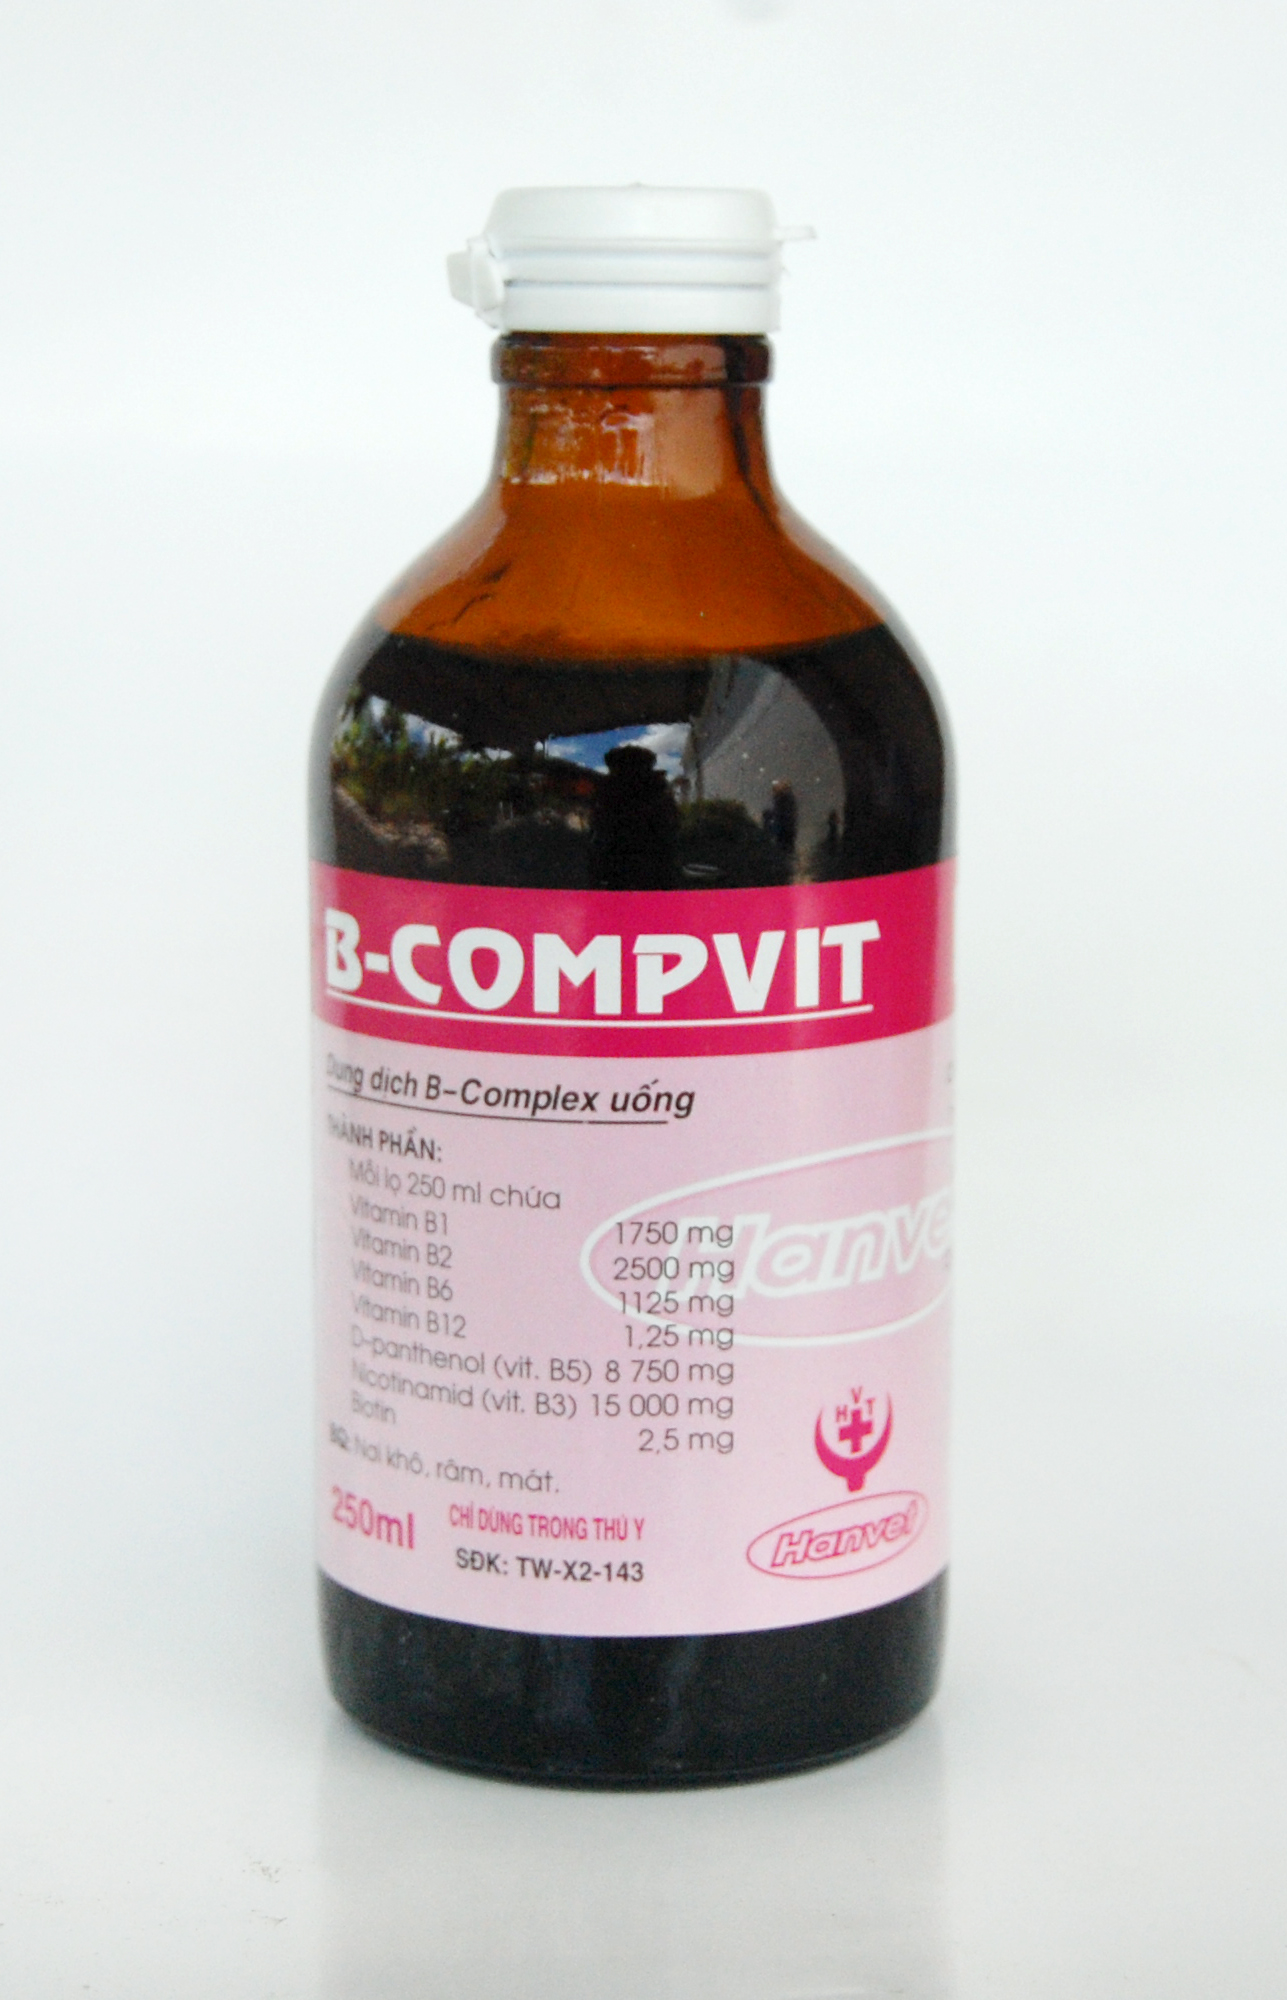 B-COMPVIT